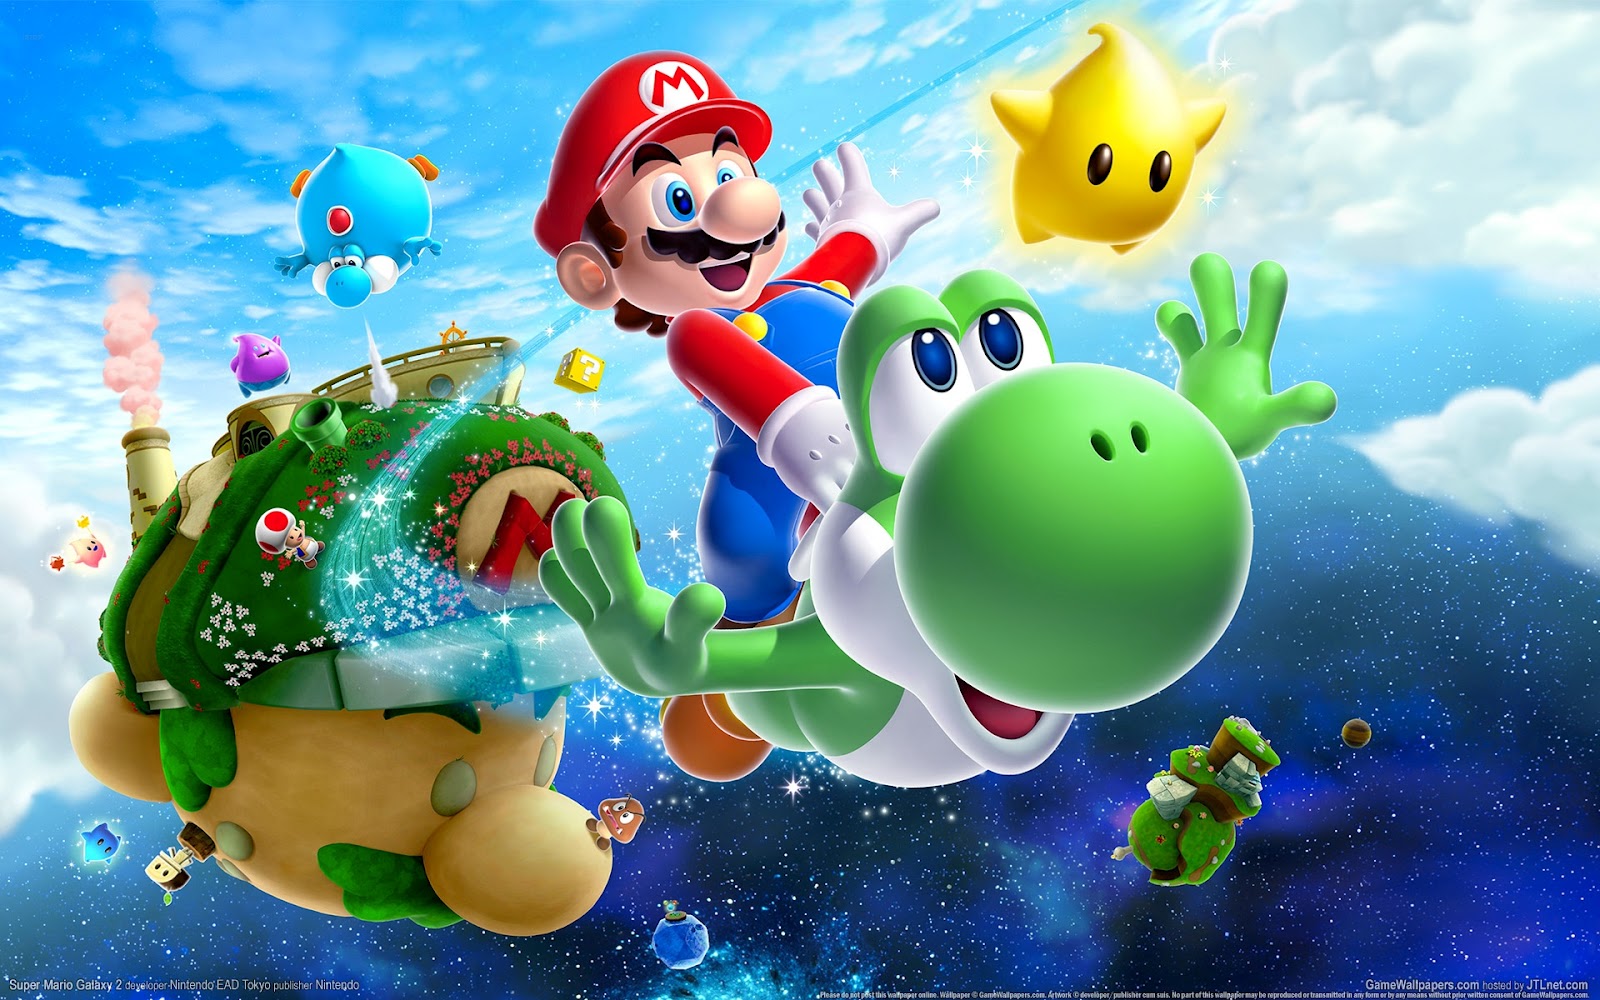 Nintendo's animated Super Mario Bros. movie is delayed until next spring